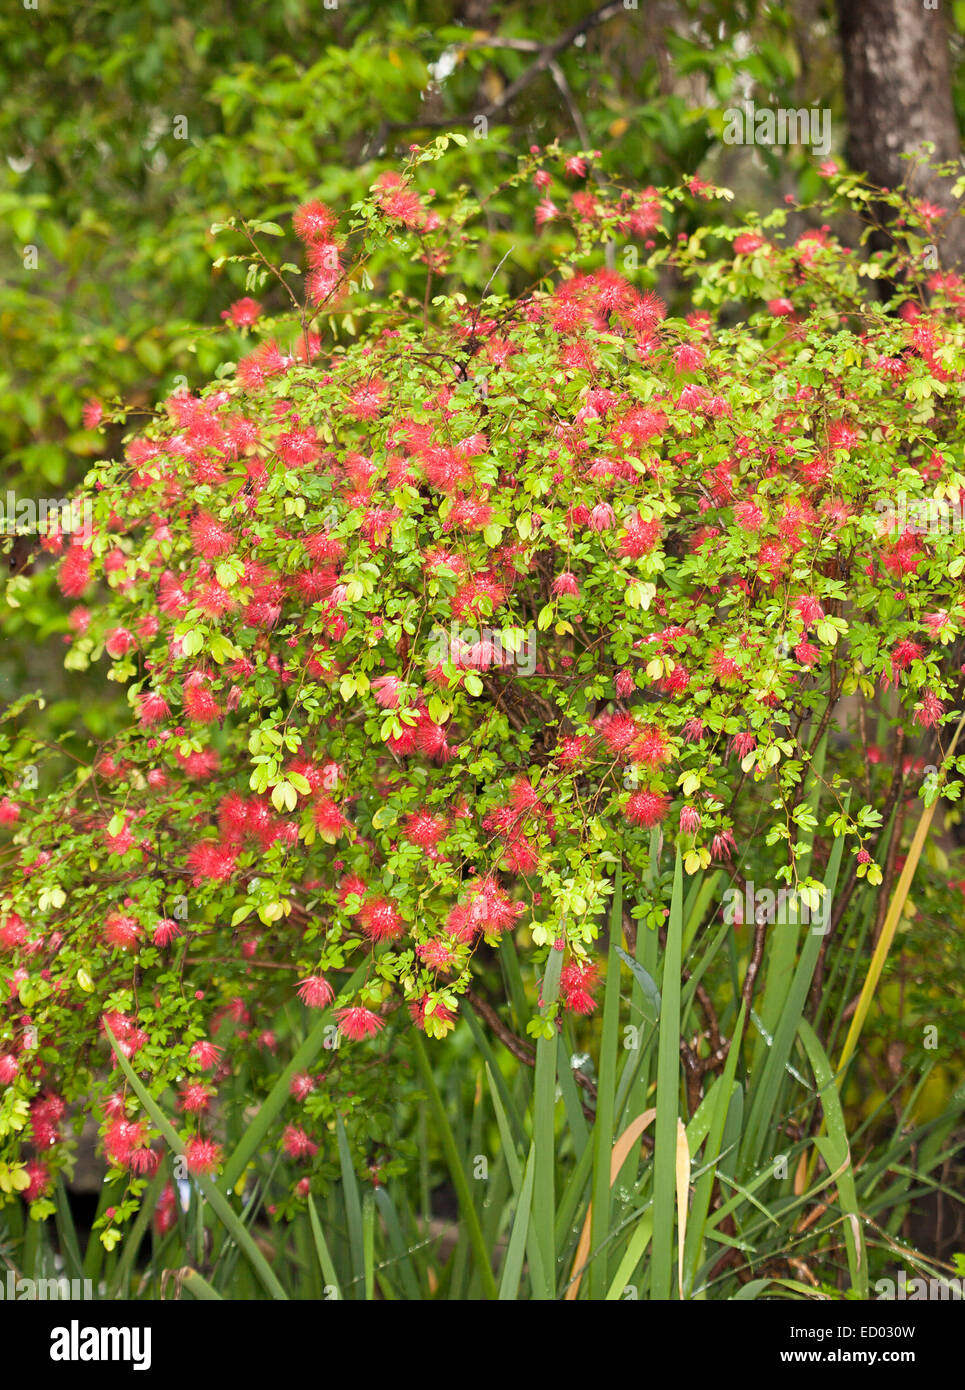 Attraktive Strauch, Calliandra erröten Pixie, Puderquaste Busch, bedeckt mit Masse von leuchtend rosa / rot Blumen & Smaragd Laub Stockfoto